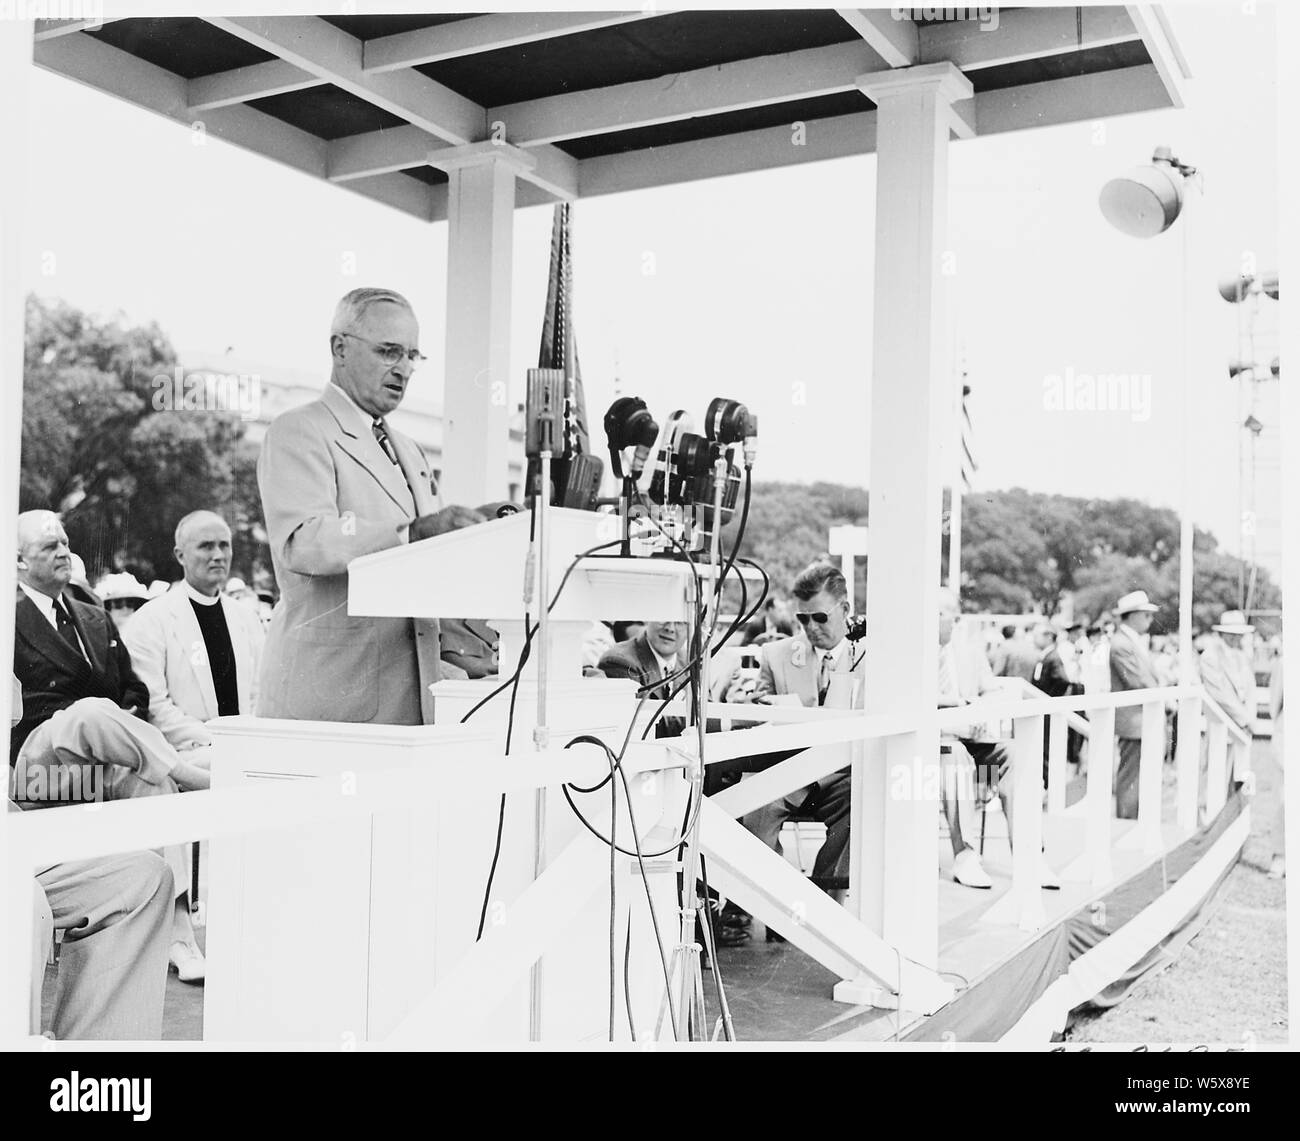 Le président Truman assiste aux cérémonies célébrant le 100e anniversaire du Washington Monument. Il est à podium sur cette photo. Banque D'Images